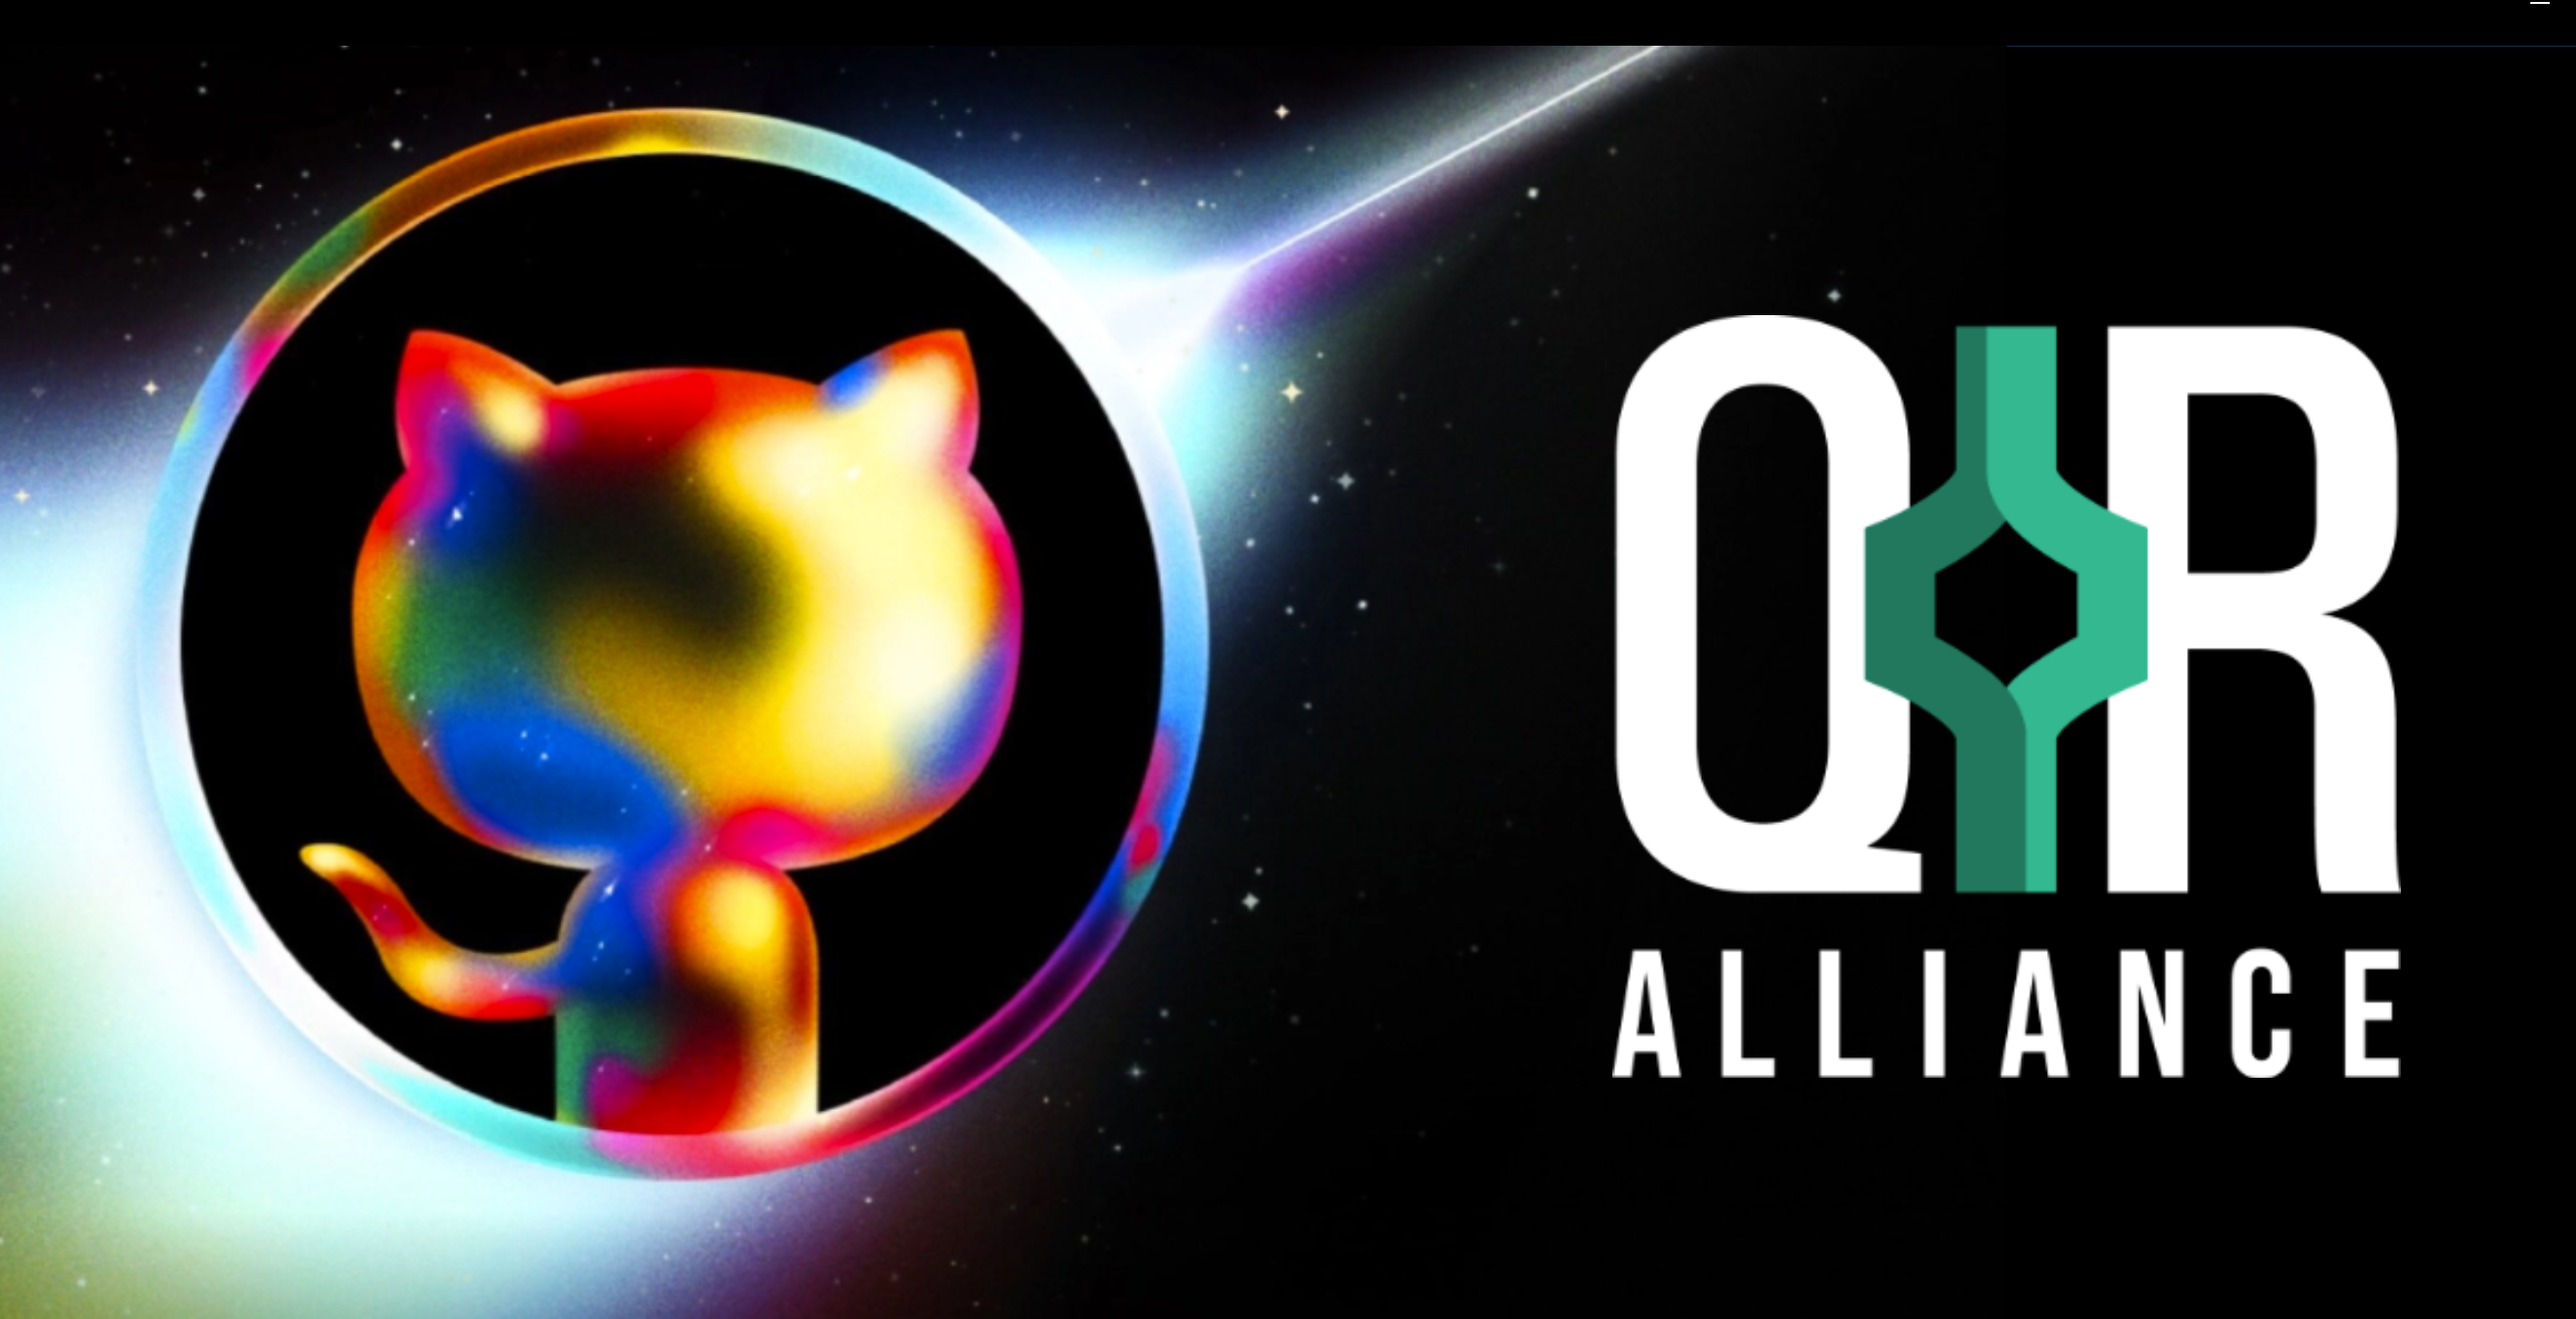 GitHub Universe and QIR alliance logo